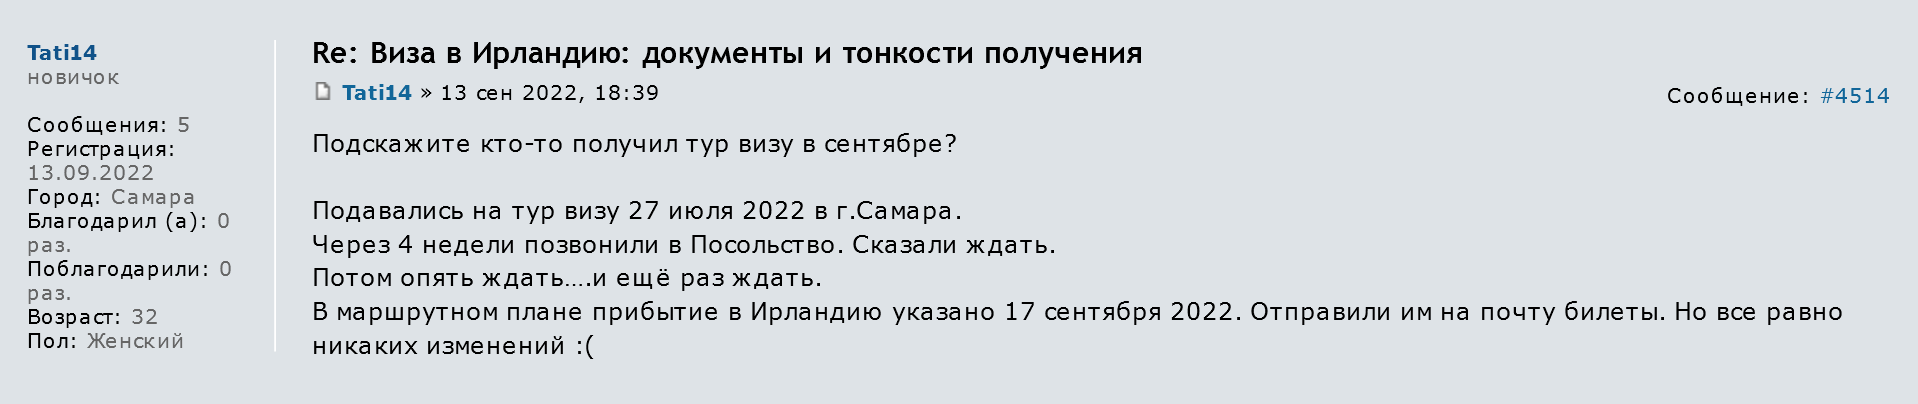 Путешественница подавала документы в Самаре 27 июля. Визу выдали только 30 сентября. Источник: forum.awd.ru